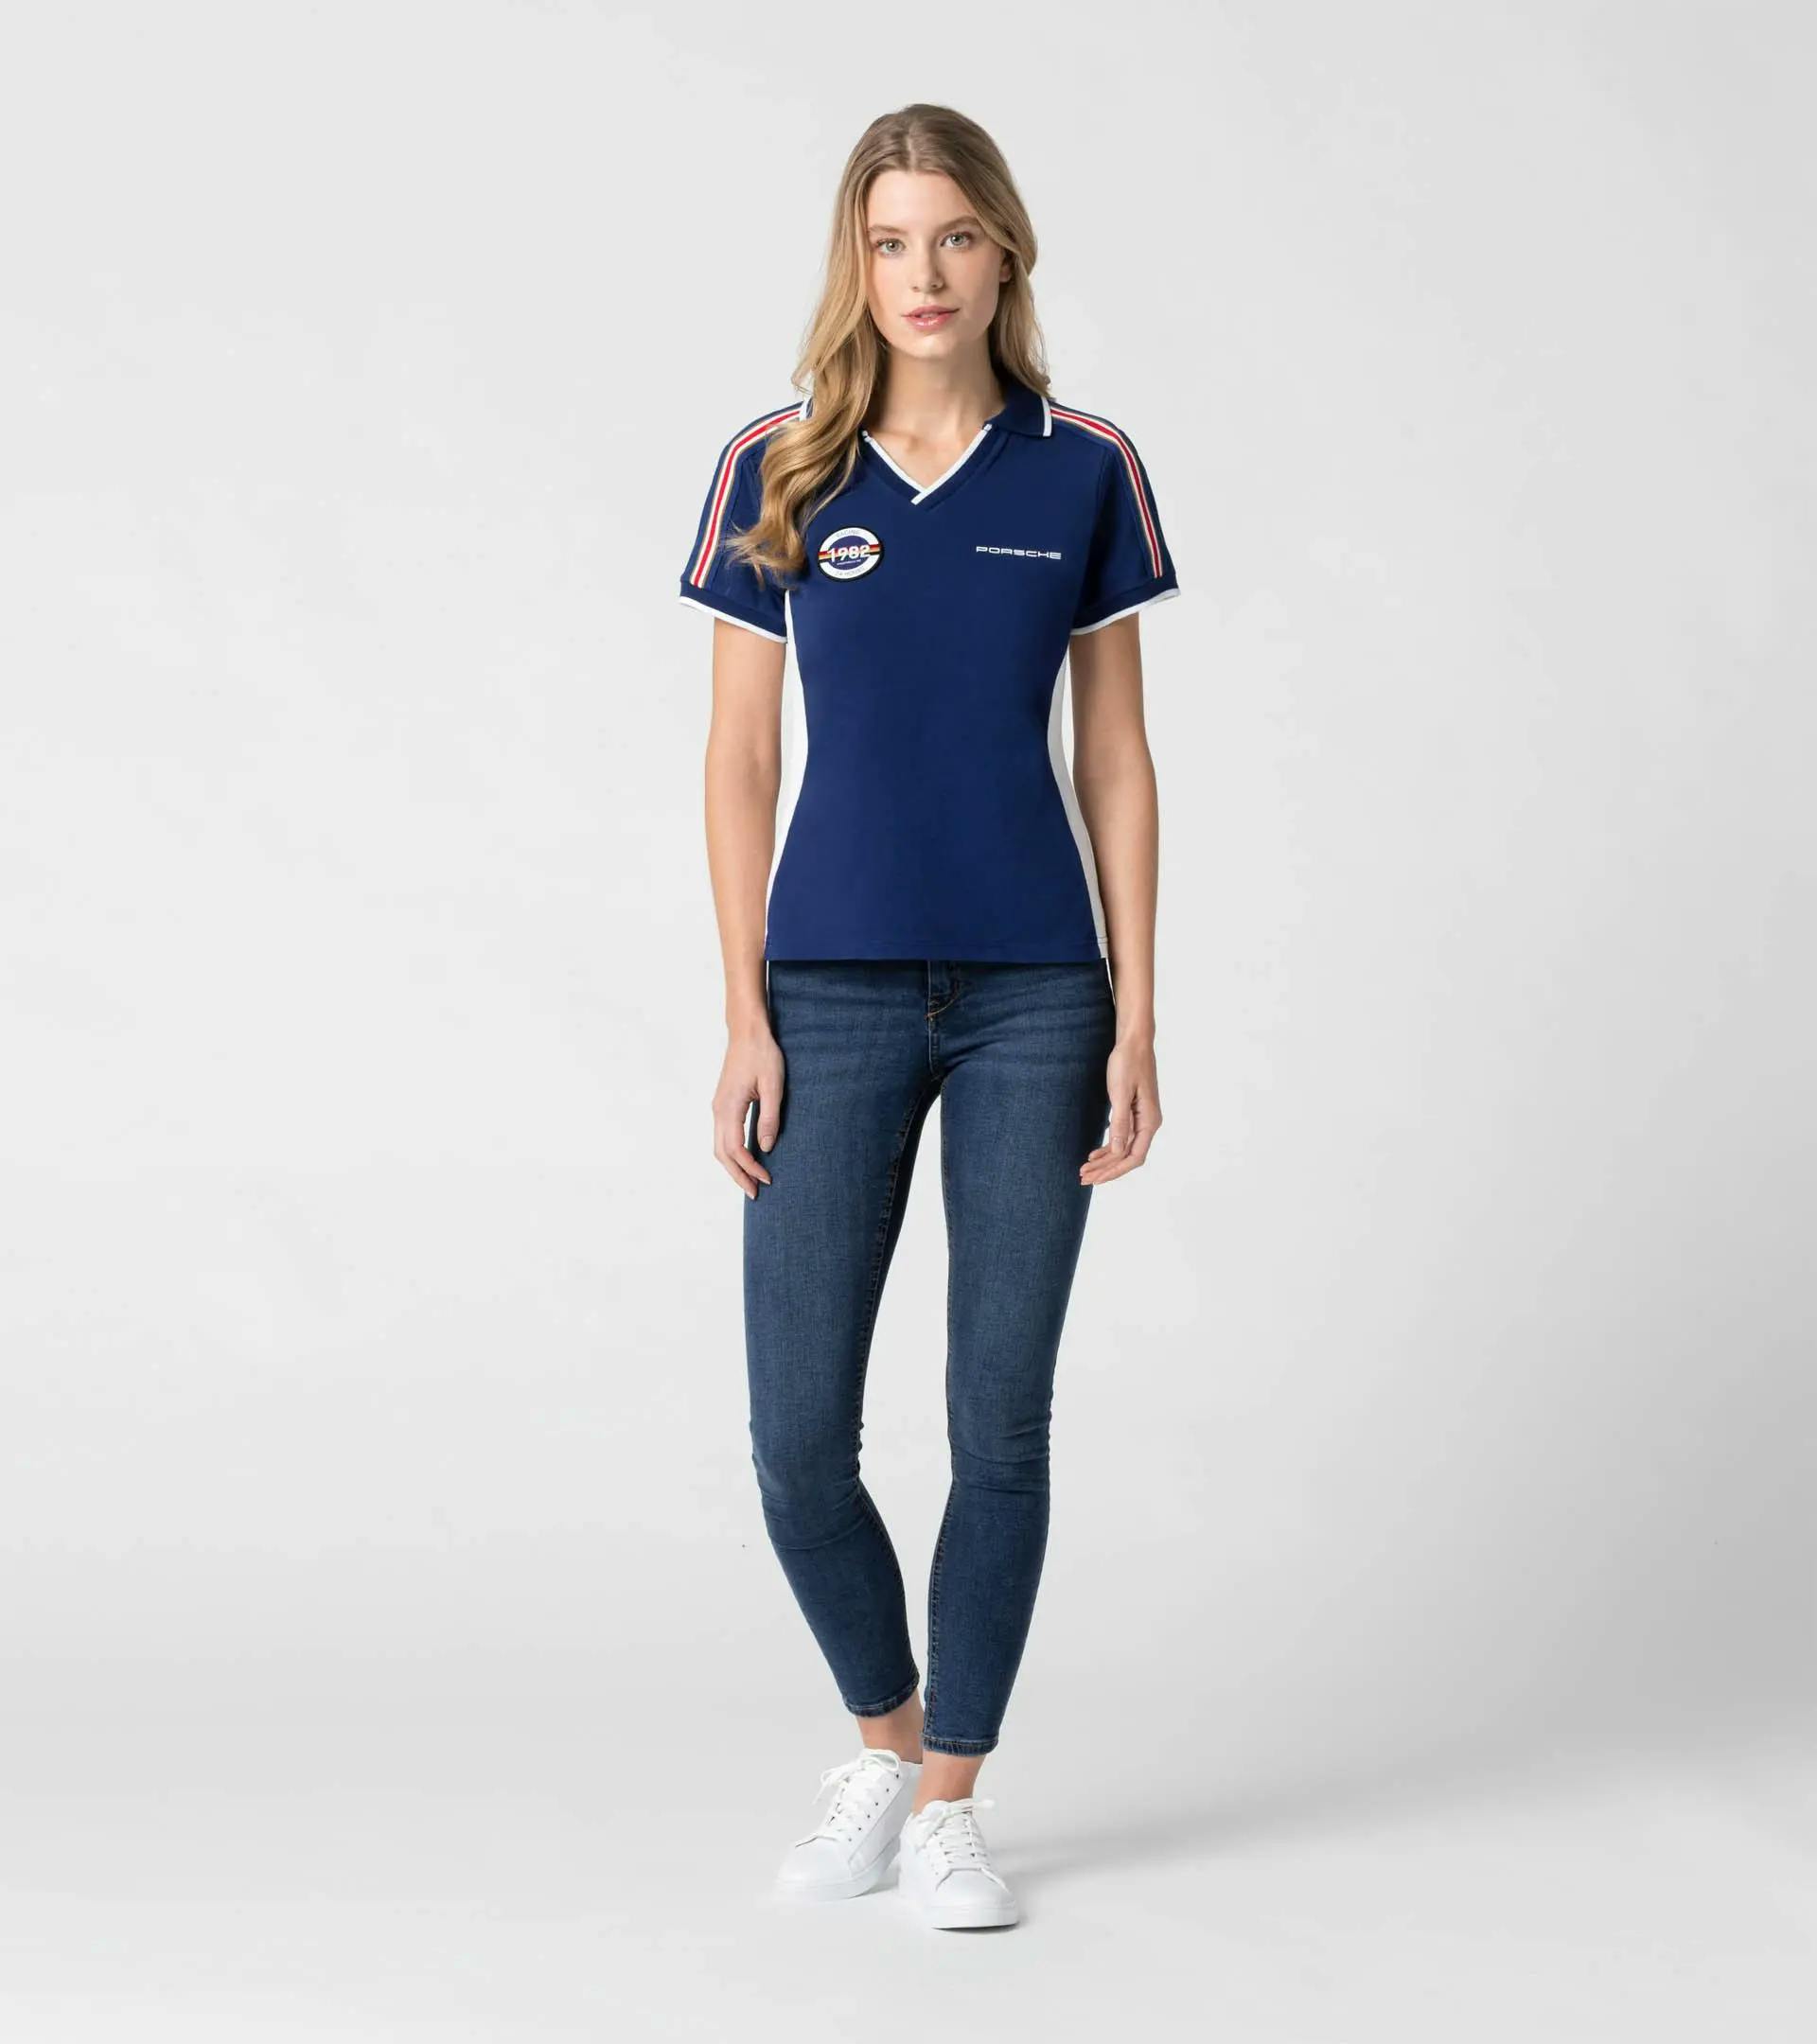 Ladies' polo shirt – Racing 6